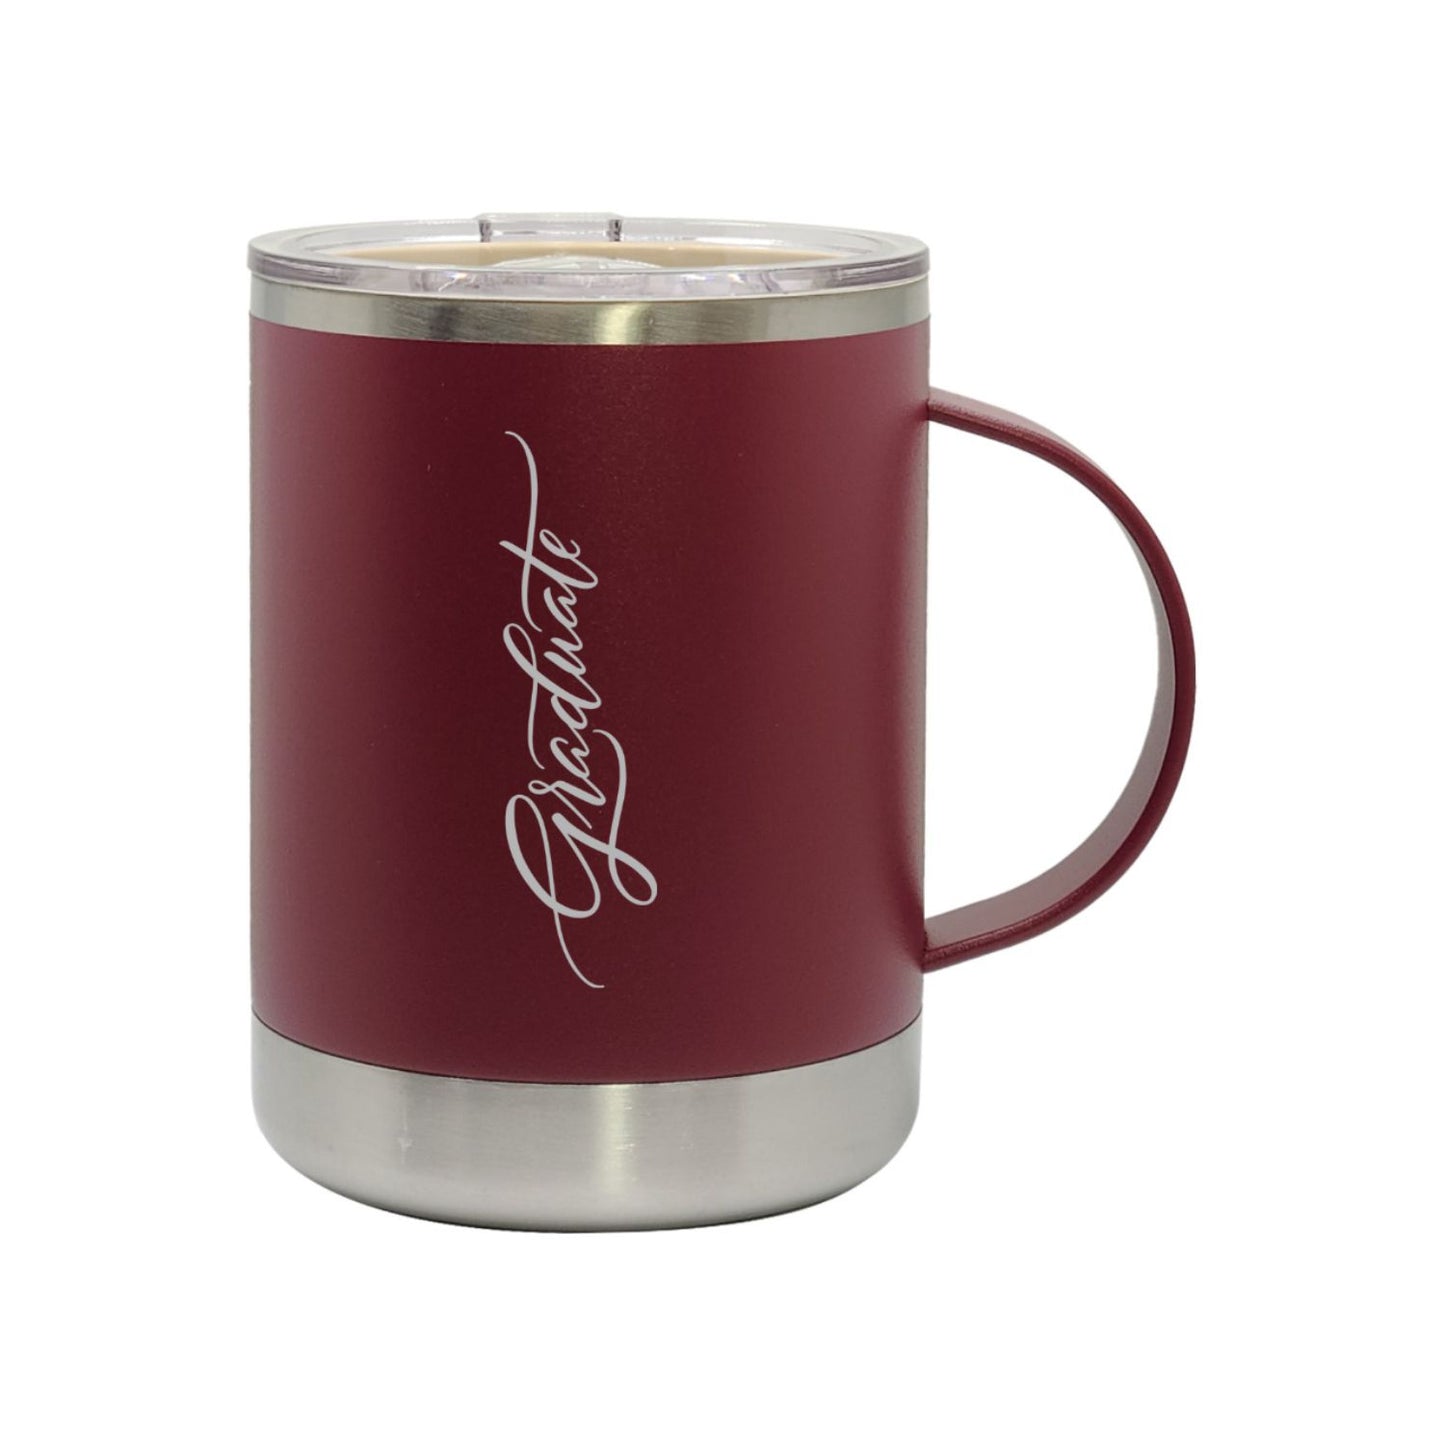 ASOBU Copper & Ceramic Coffee Mug - 12 oz